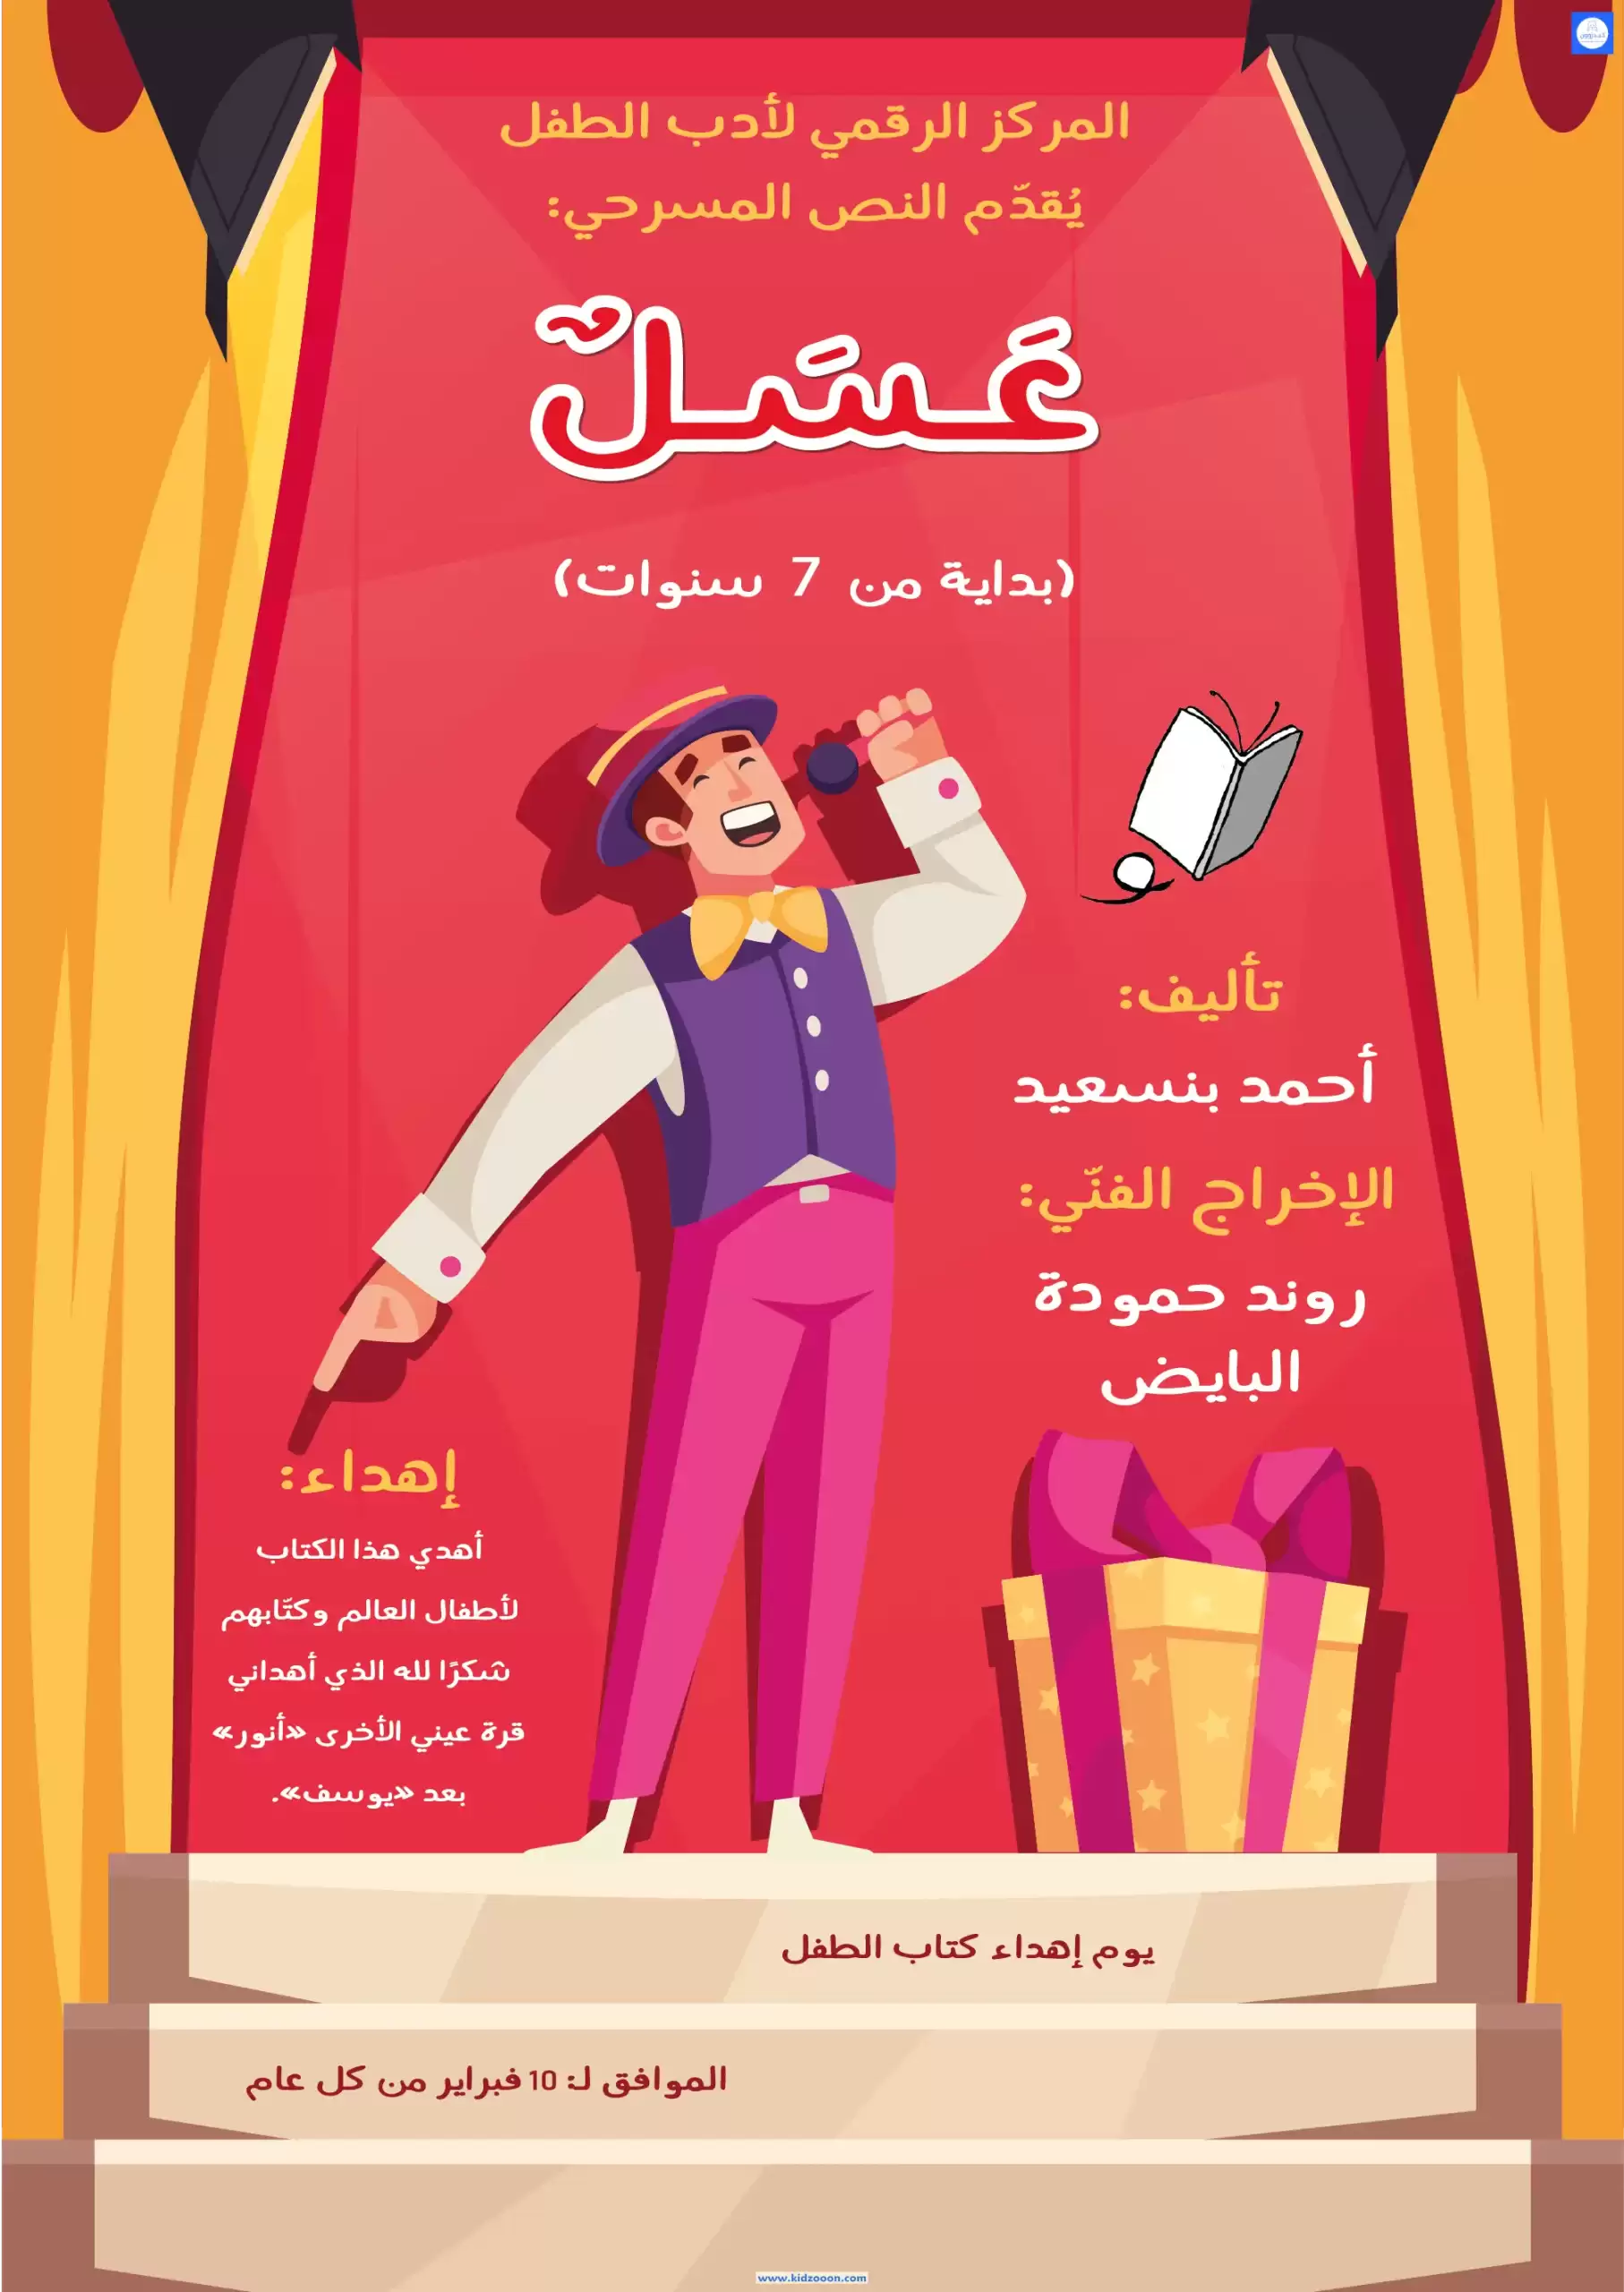 كتاب عسل تأليف أحمد بنسعيد01 موقع كيدزوون لأدب وقصص الطفل واليافعين www.kidzooon.com scaled